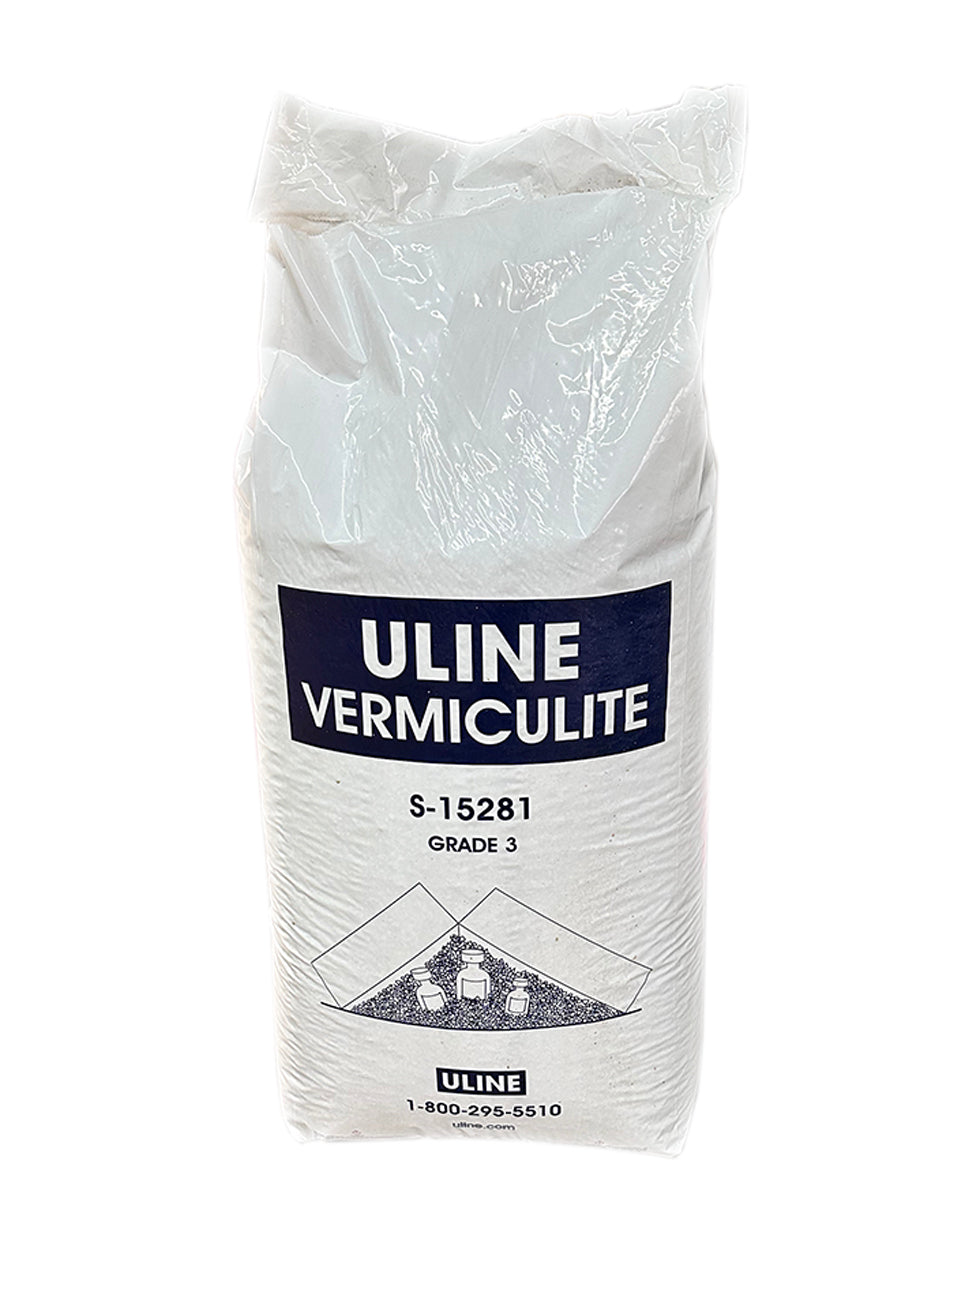 Uline Grade 3 Vermiculite, 4 cu. ft.